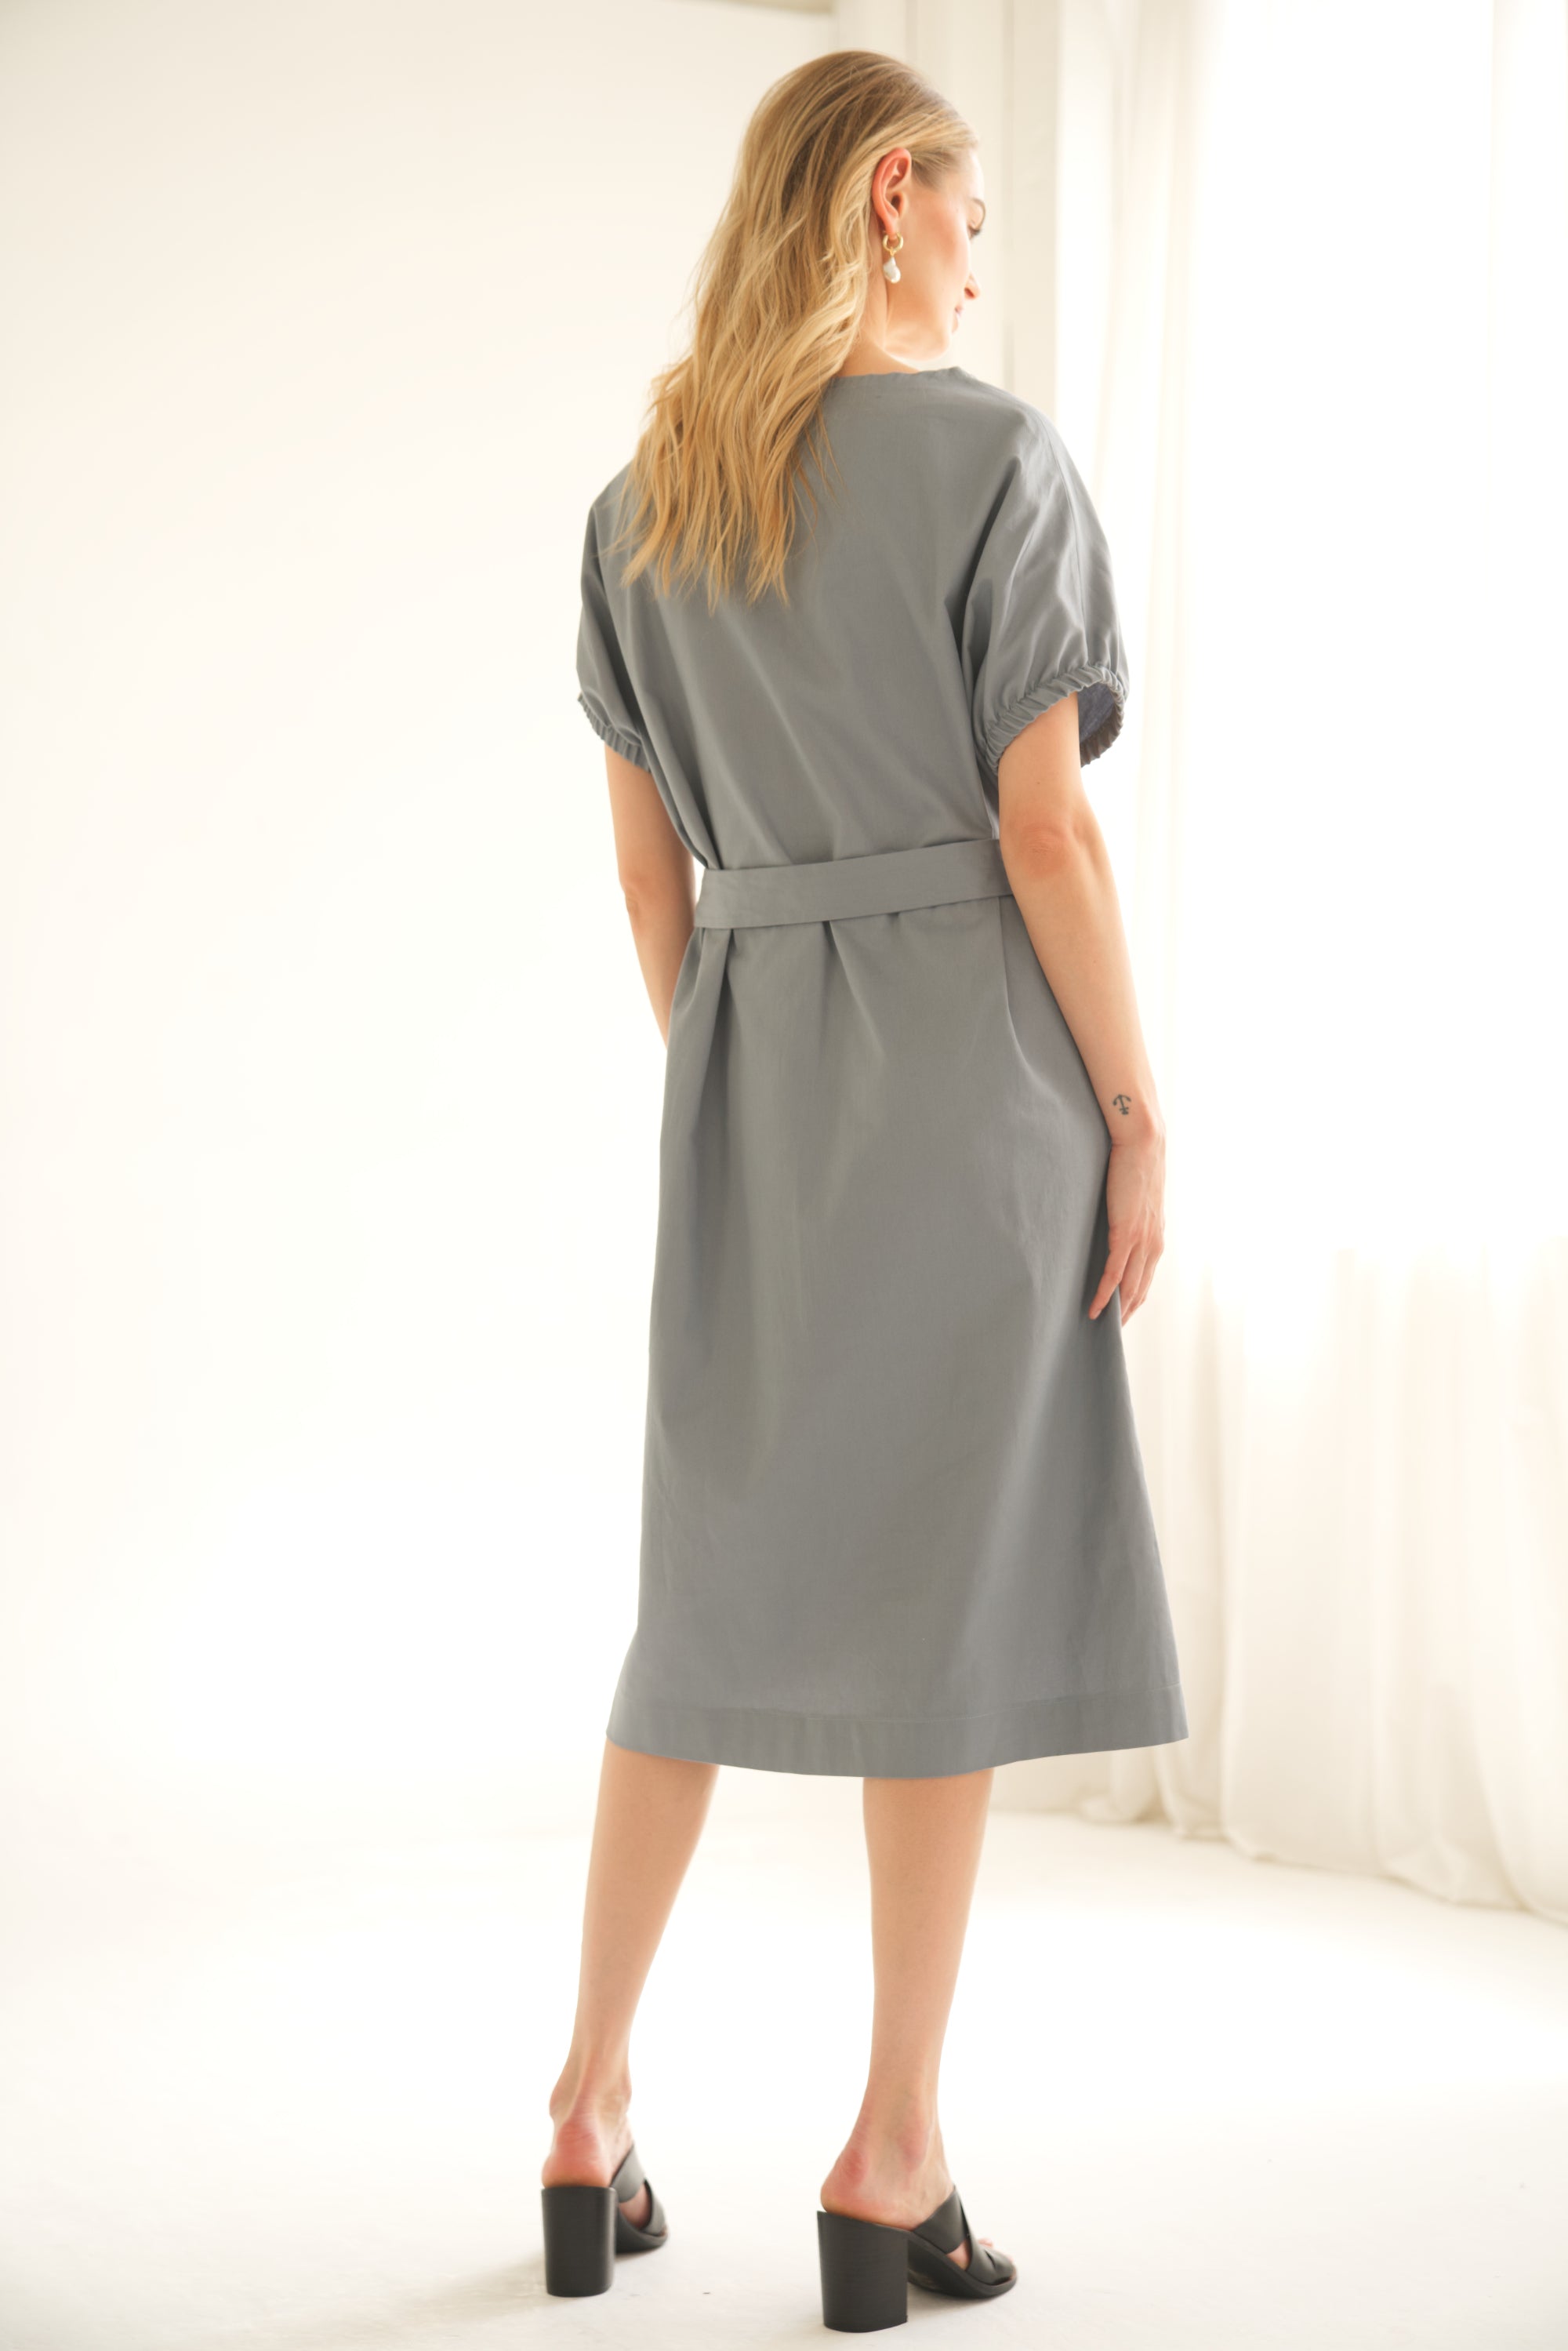 Oversize-Kleid aus Baumwolle in der Farbe blau wird von einem blonden Model getragen. Das Model wird von hinten gezeigt.